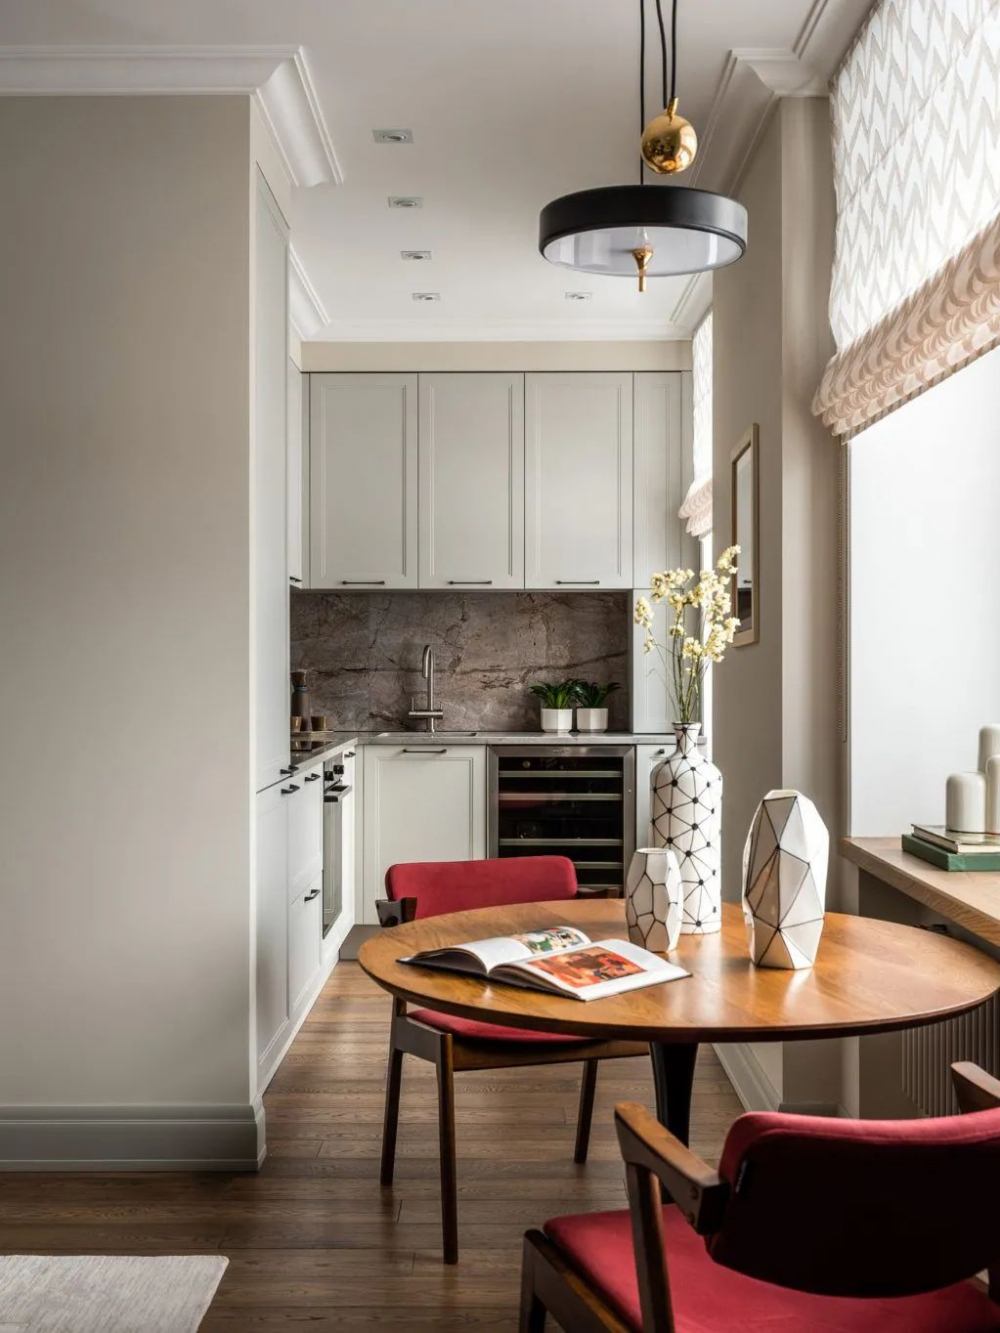 Với sự kết hợp hoàn hảo giữa chất liệu và màu sắc, thiết kế bếp 4-5m² của chúng tôi sẽ giúp căn bếp trở nên vô cùng đẳng cấp và tiện nghi. Gương mặt mới của căn bếp của bạn sẽ sáng bóng và tinh tế hoàn toàn không giống bất kỳ căn bếp nào khác.